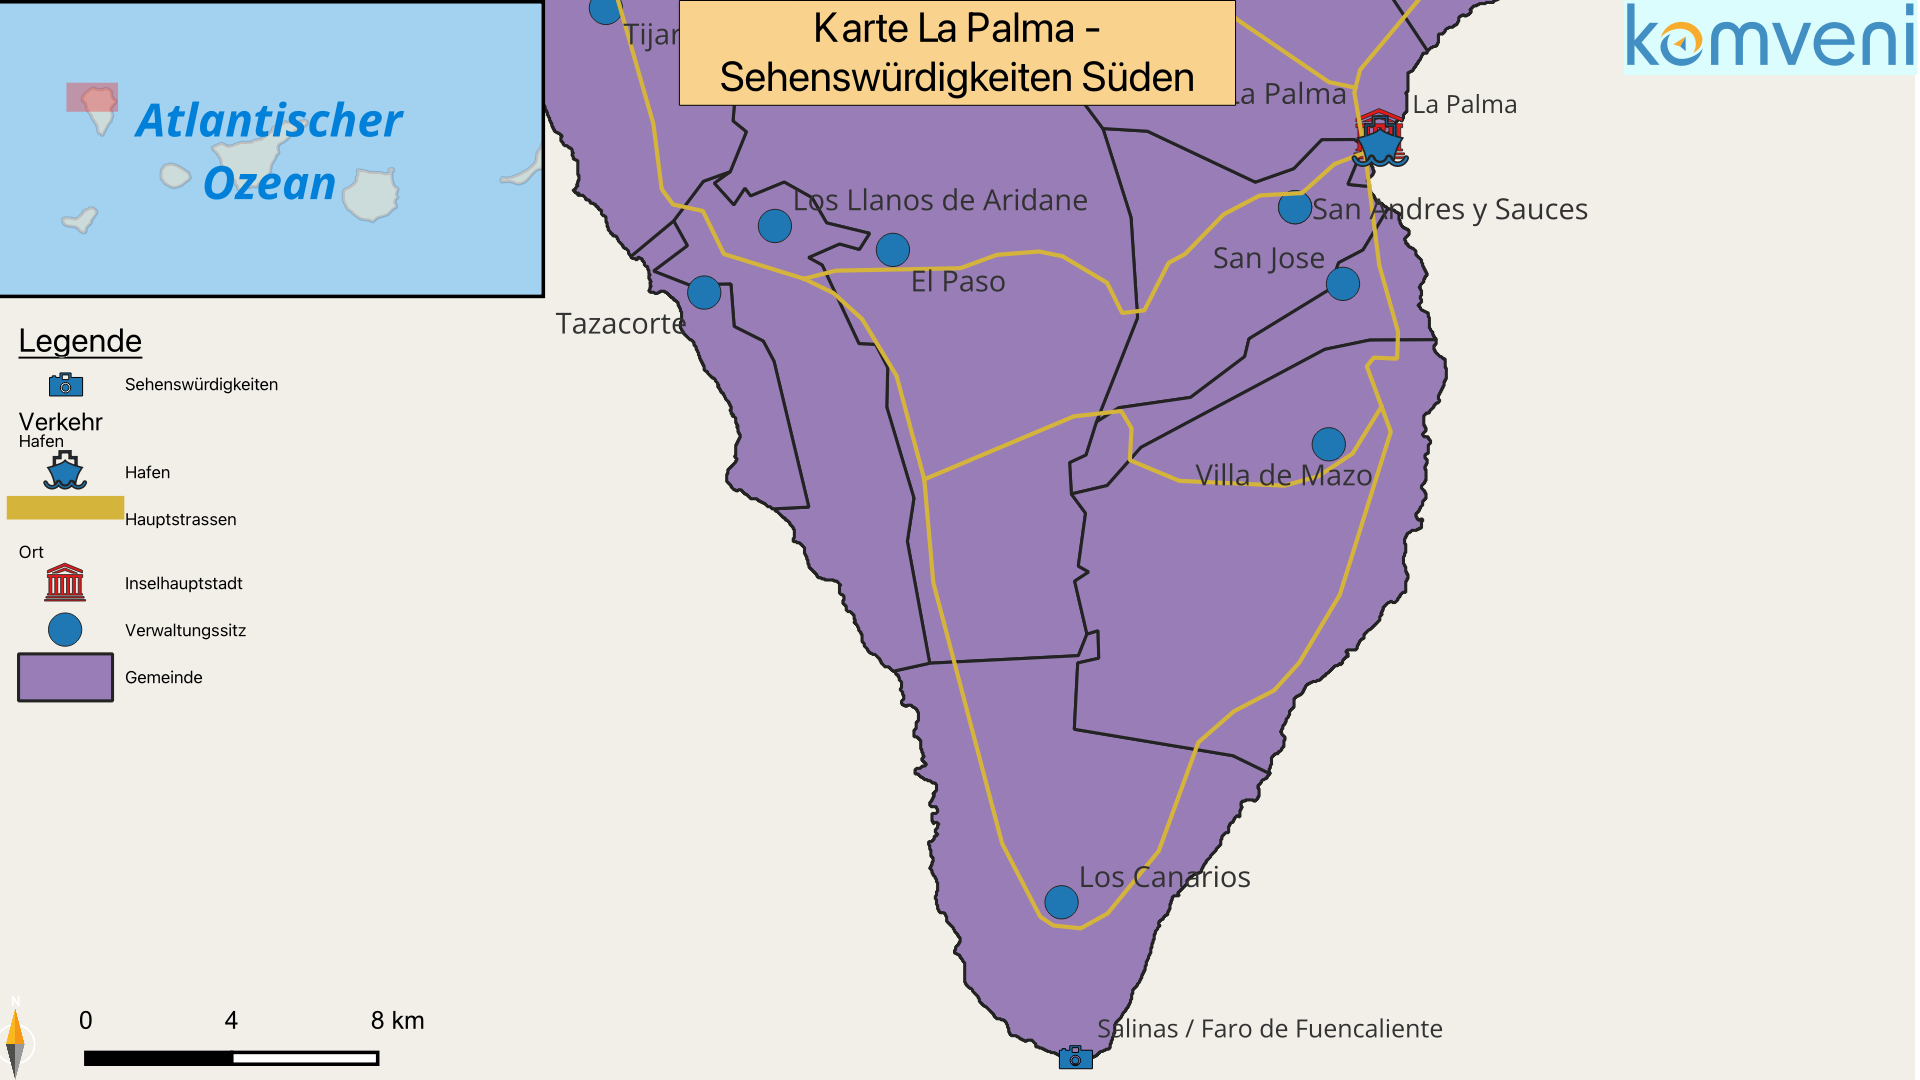 Karte La Palma Sehenswuerdigkeiten Sueden